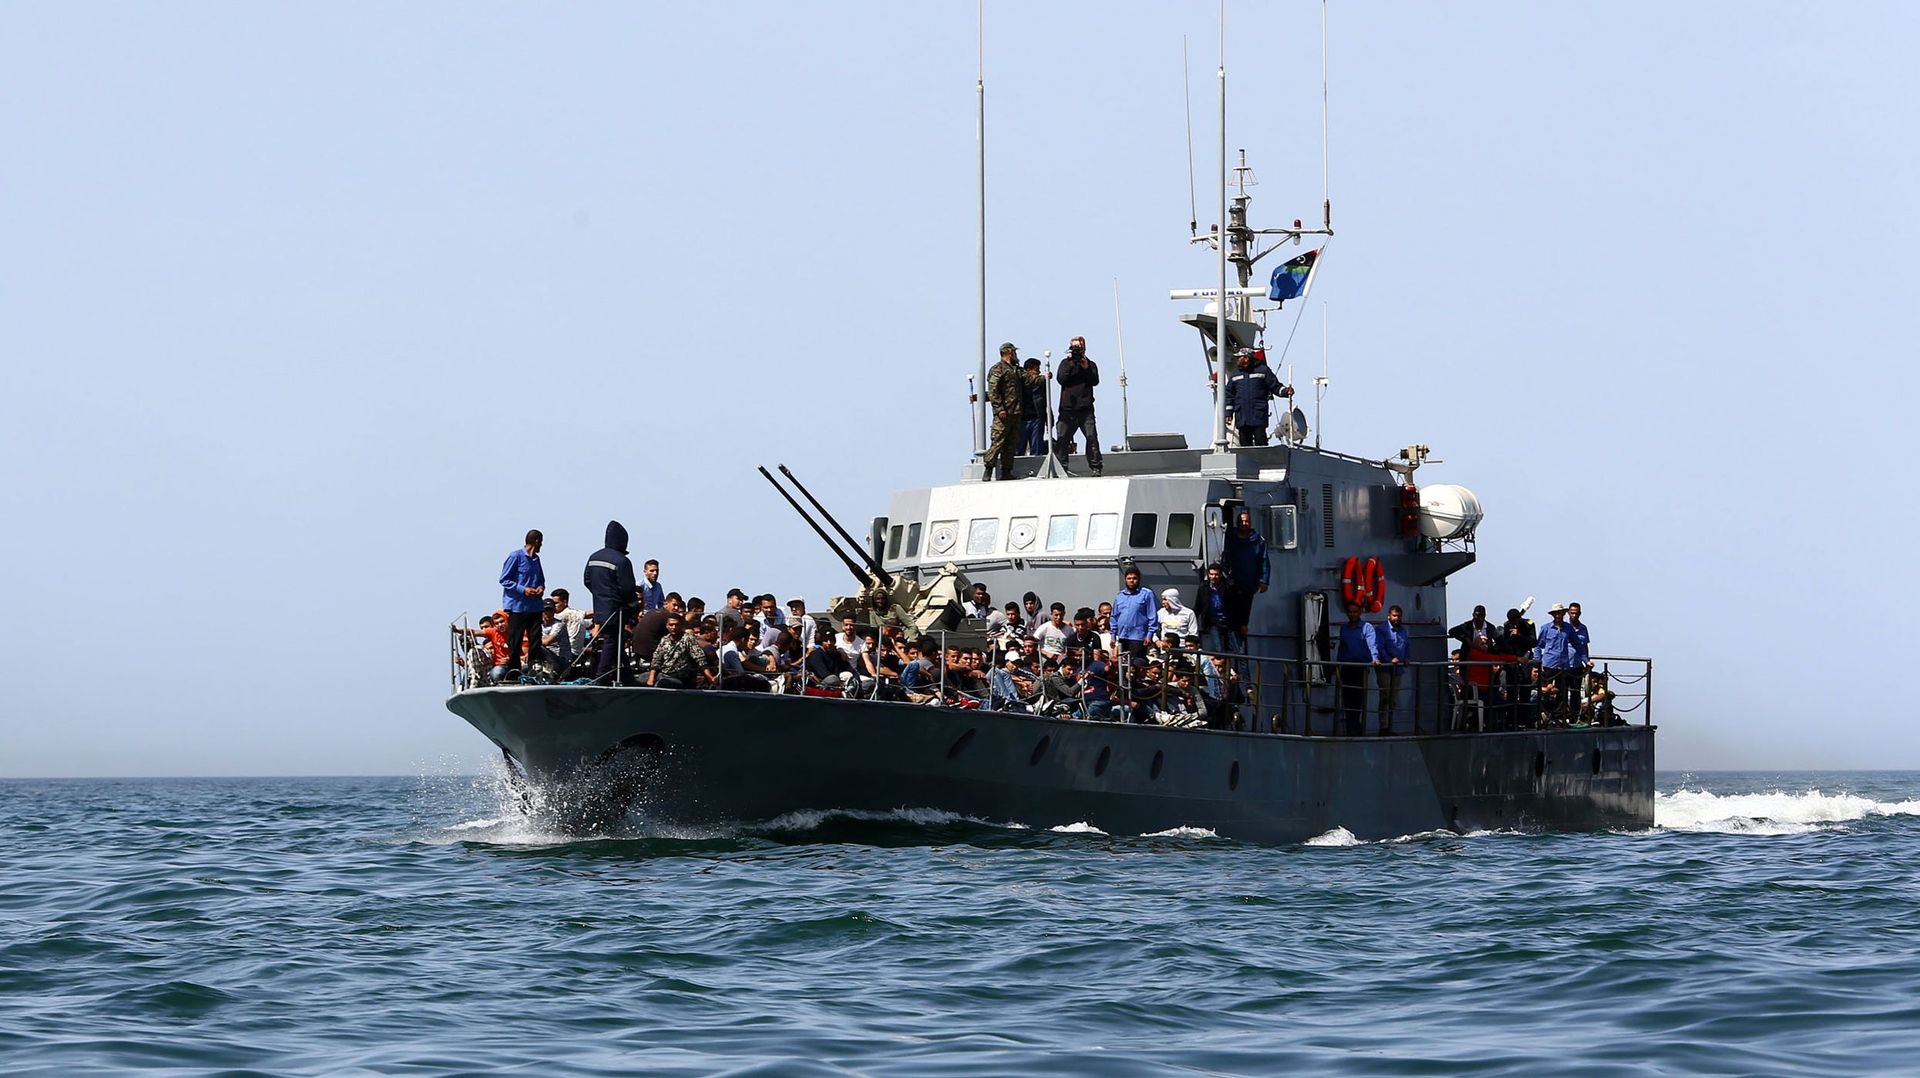 Plus de 50 000 migrants sont arrivés par mer en Europe depuis janvier